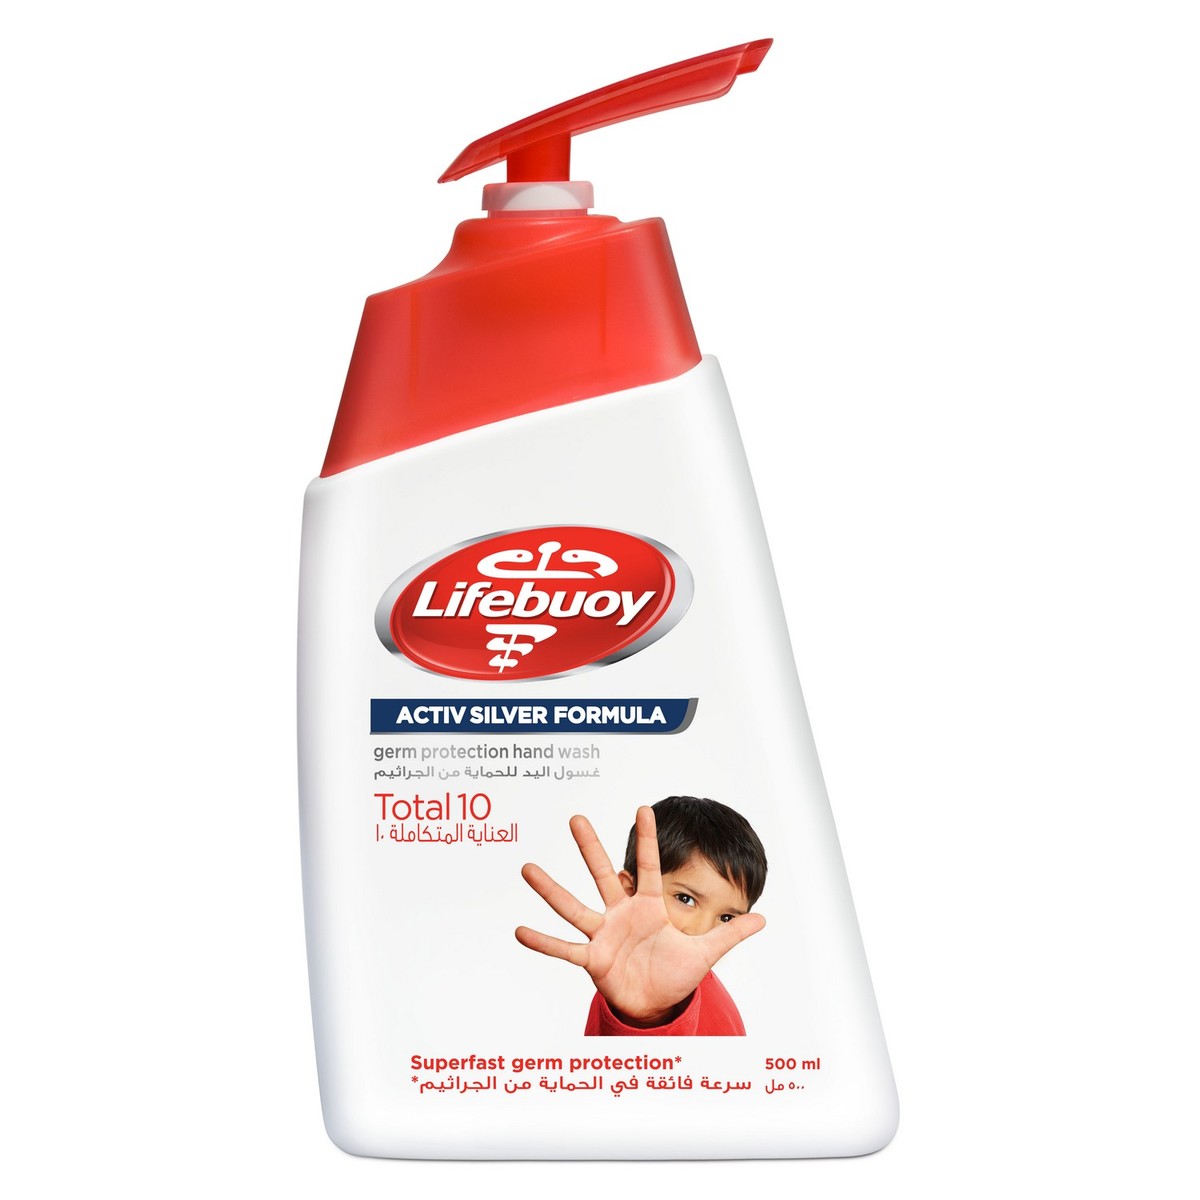 Жидкое средство для мытья рук. Lifebuoy. Liquid Soap lifebuoy. Lifebuoy жидкое мыло. Liquid hand Wash.